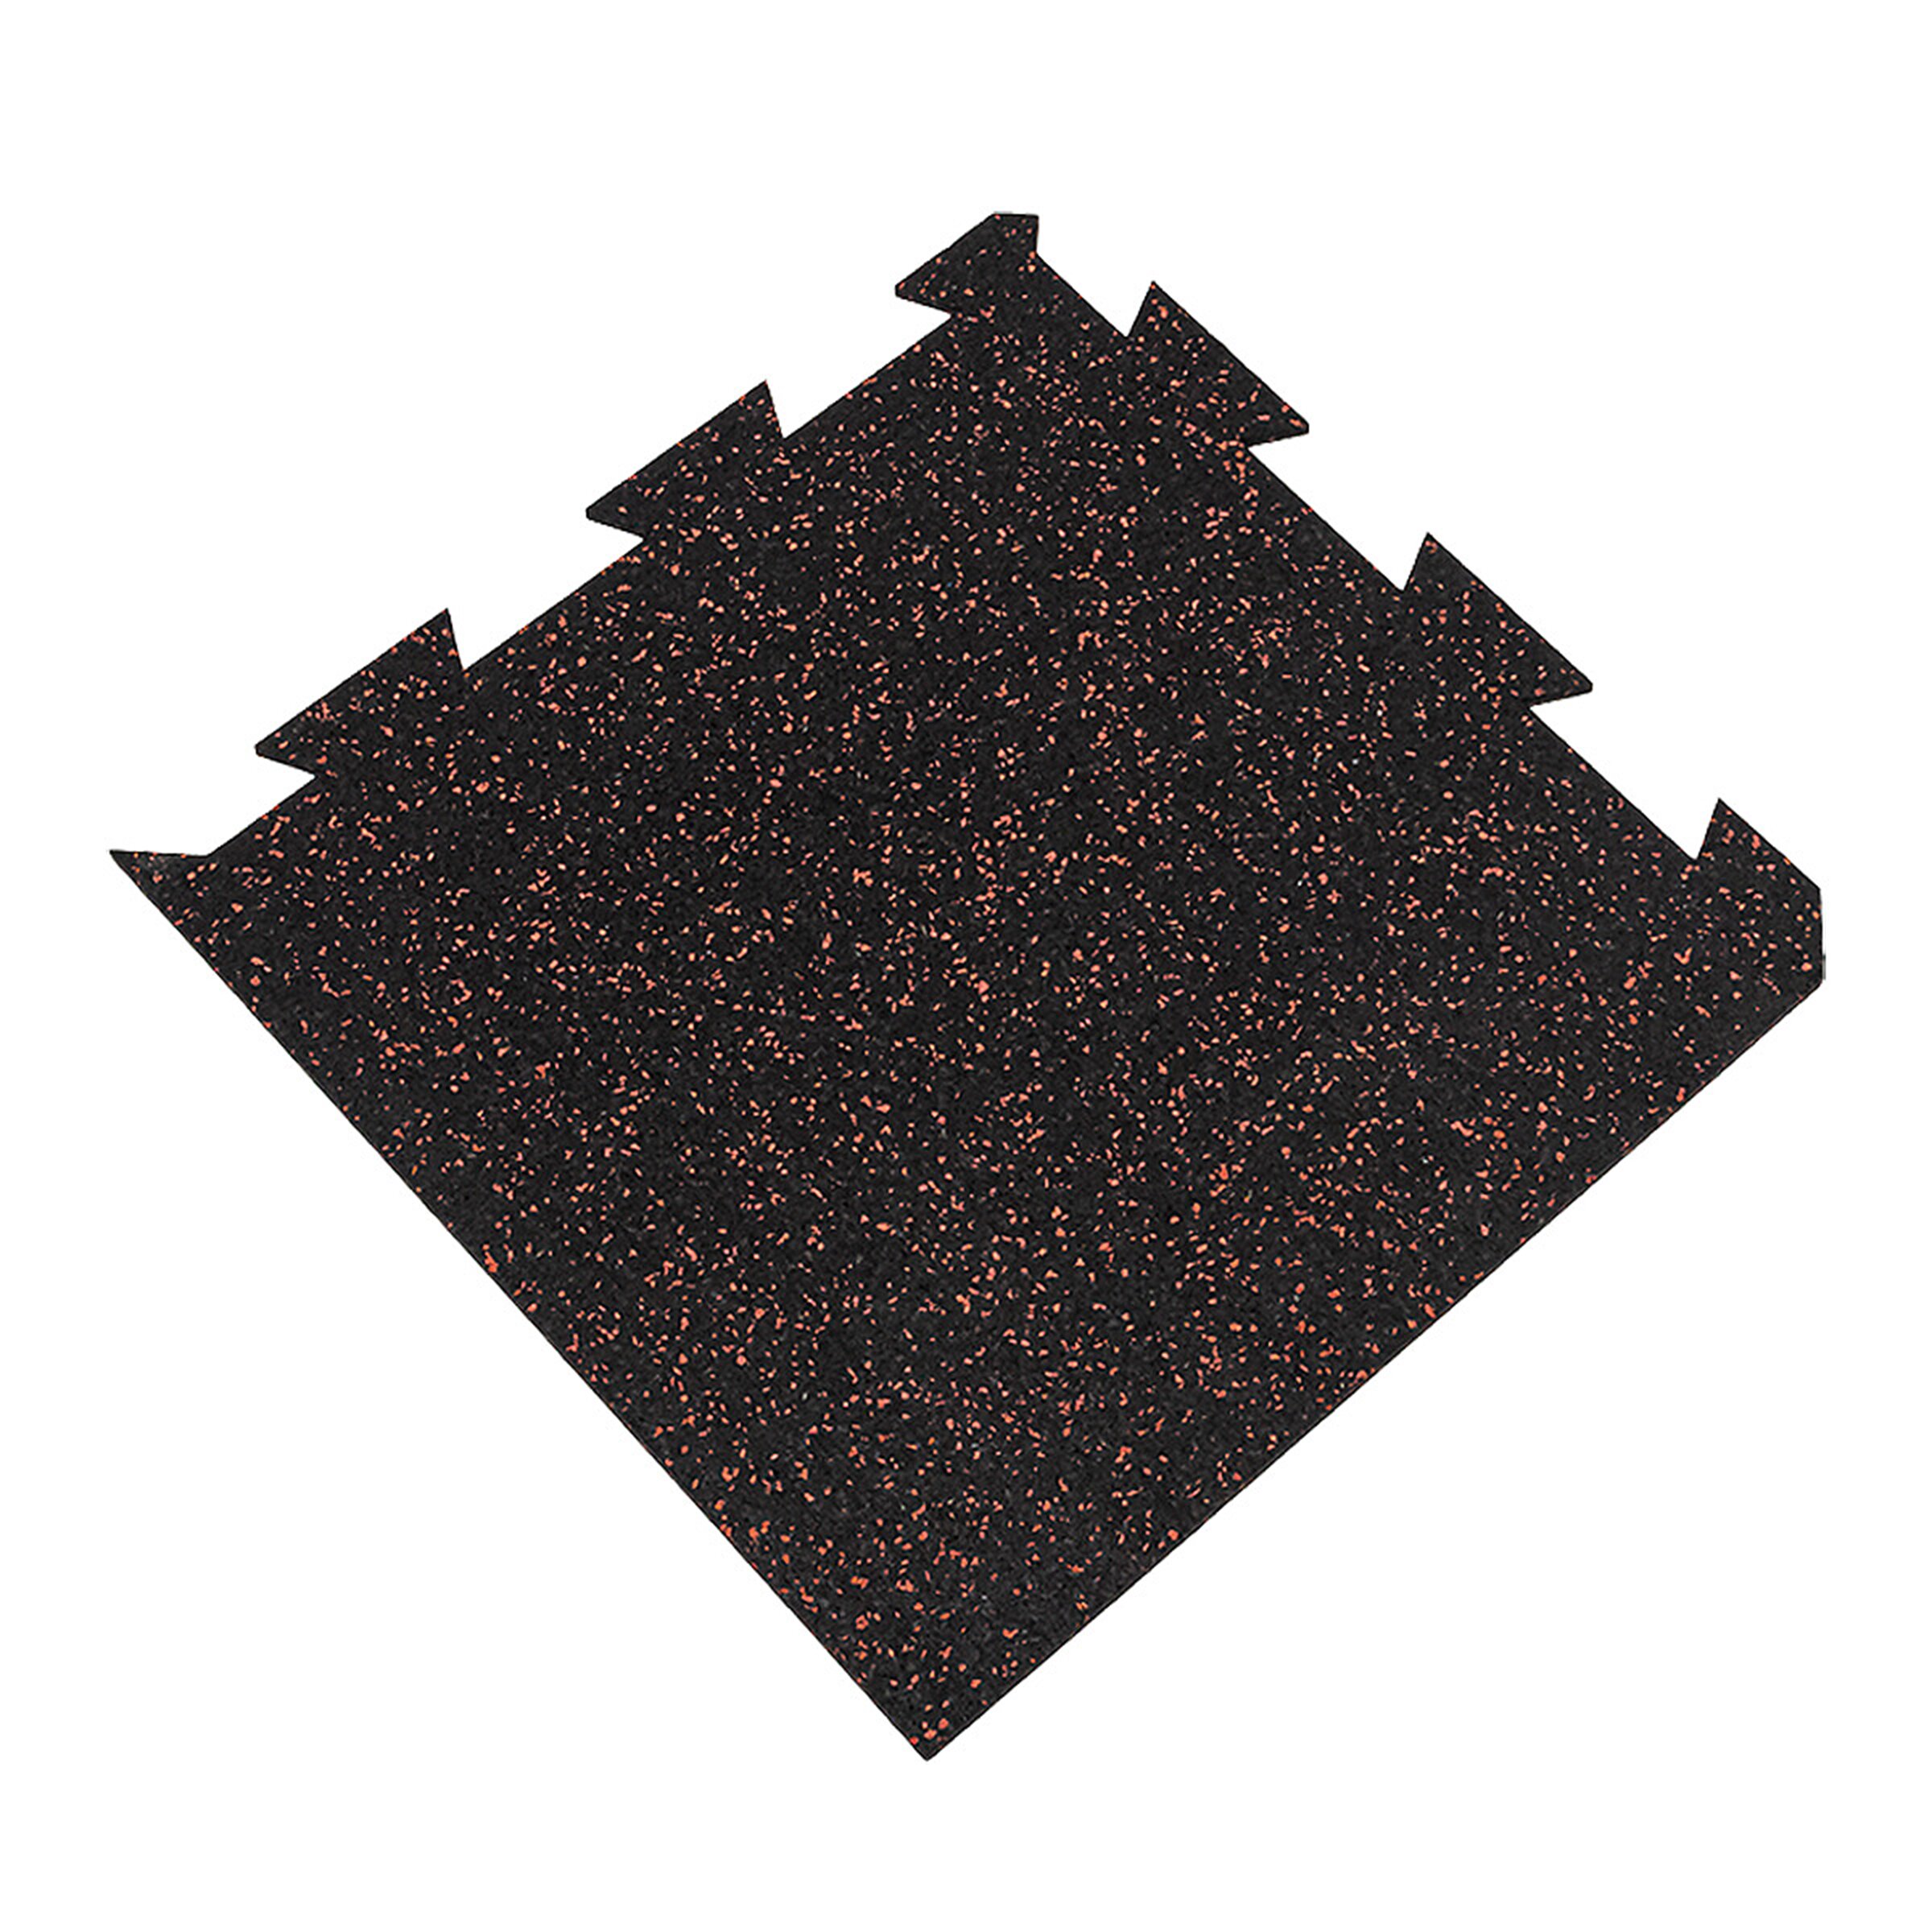 Černo-červená gumová puzzle modulová dlažba FLOMA SF1050 FitFlo - délka 50 cm, šířka 50 cm, výška 1 cm